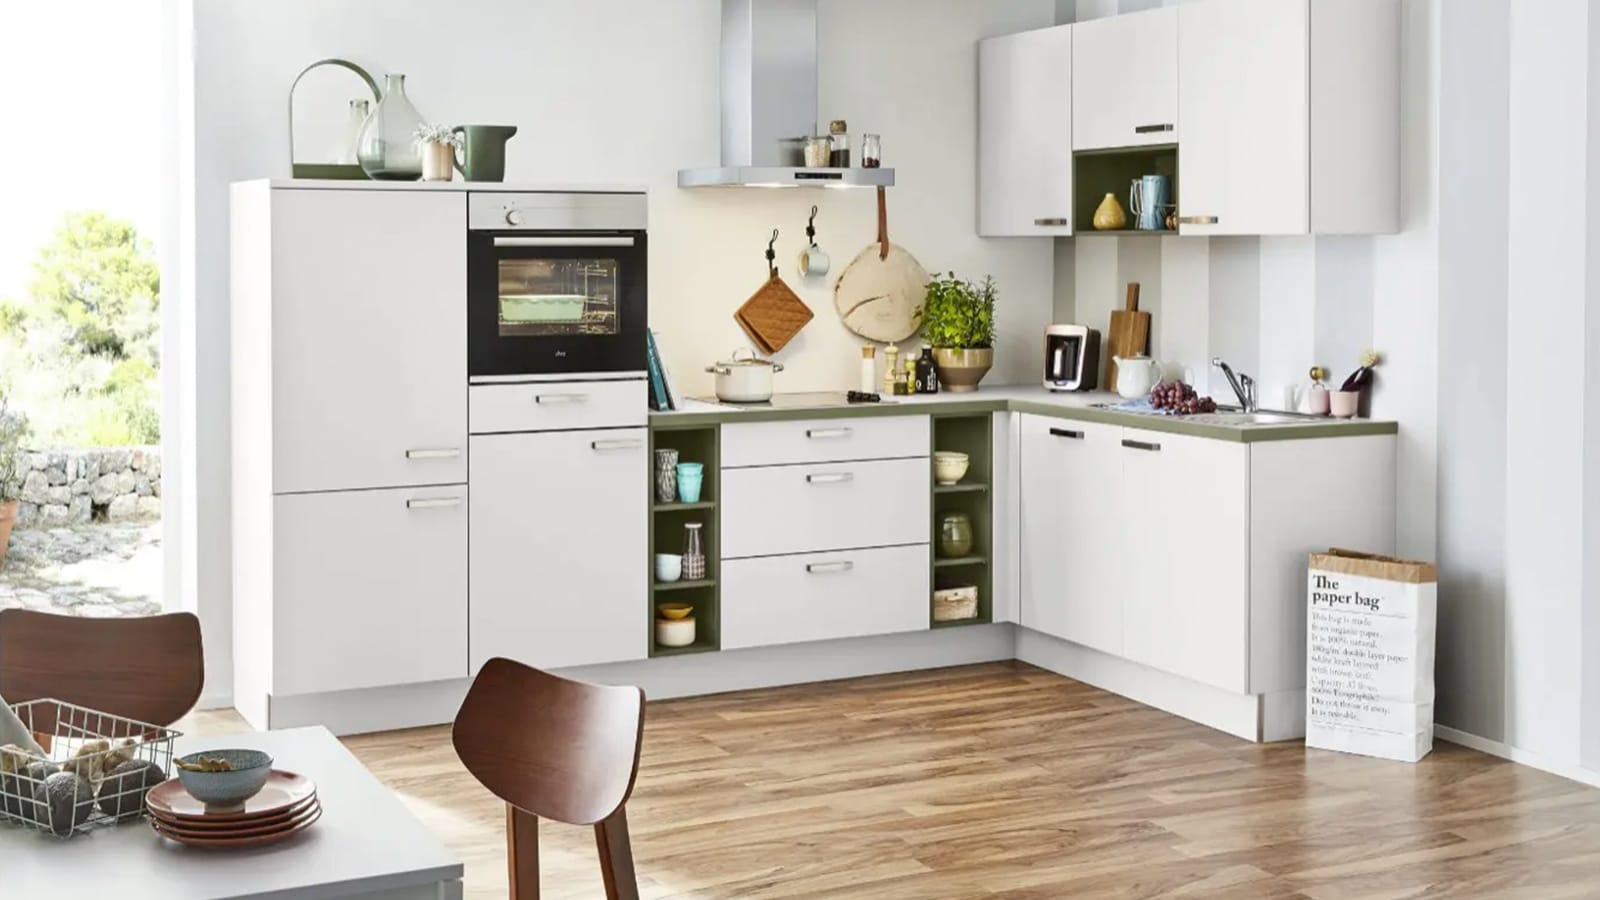 KA 40.100 Eckküche Home Möbel - in Company und weiß olive